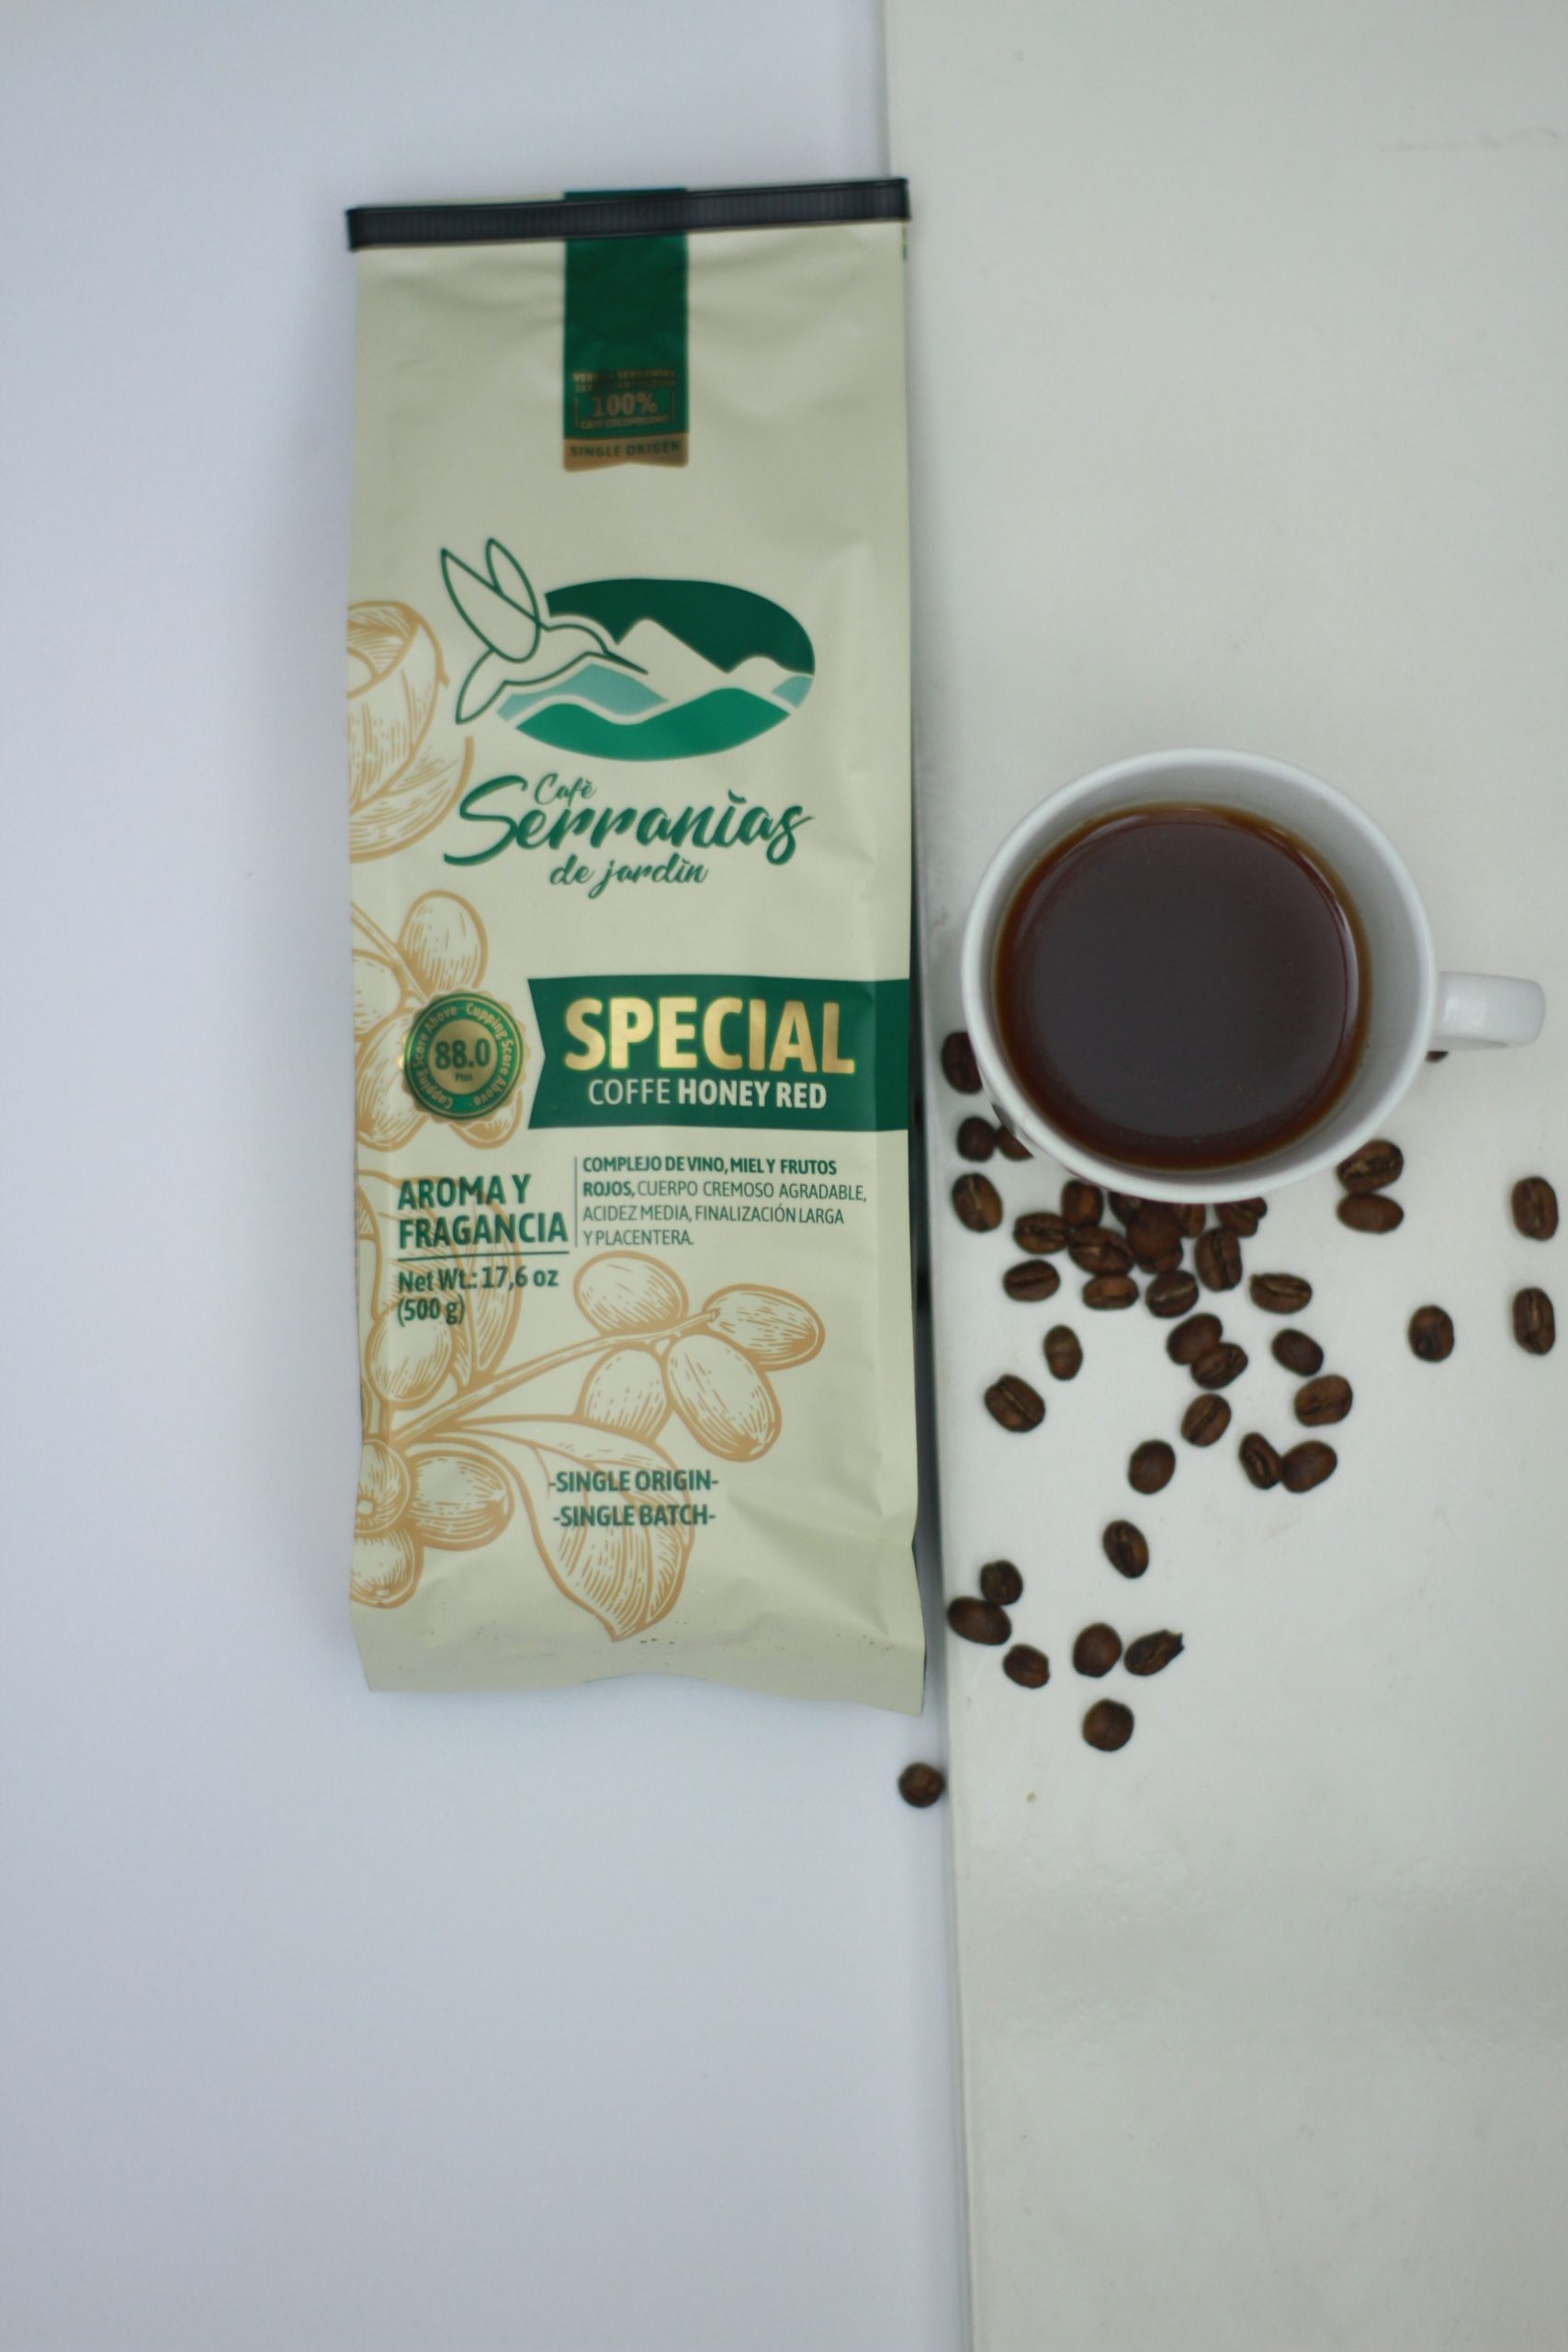 Serranias-coffee (6)